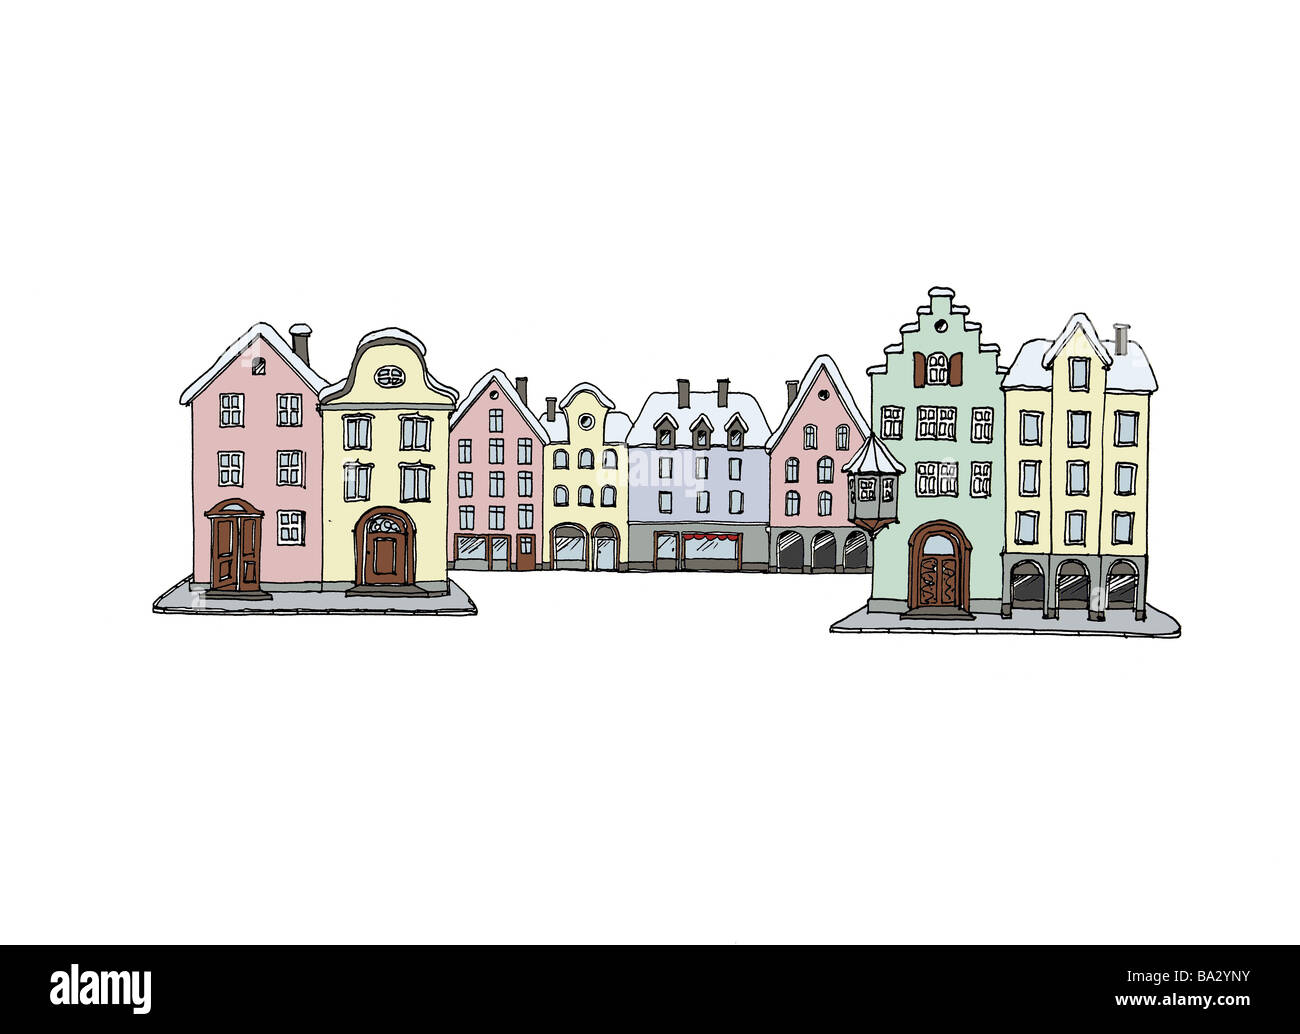 Computergrafik Reihe der Häuser bunt Stadt alten Teil der Stadt Fassaden alten Teil der Stadt-Fassaden Häuserzeile Giebel-Häuser Stockfoto